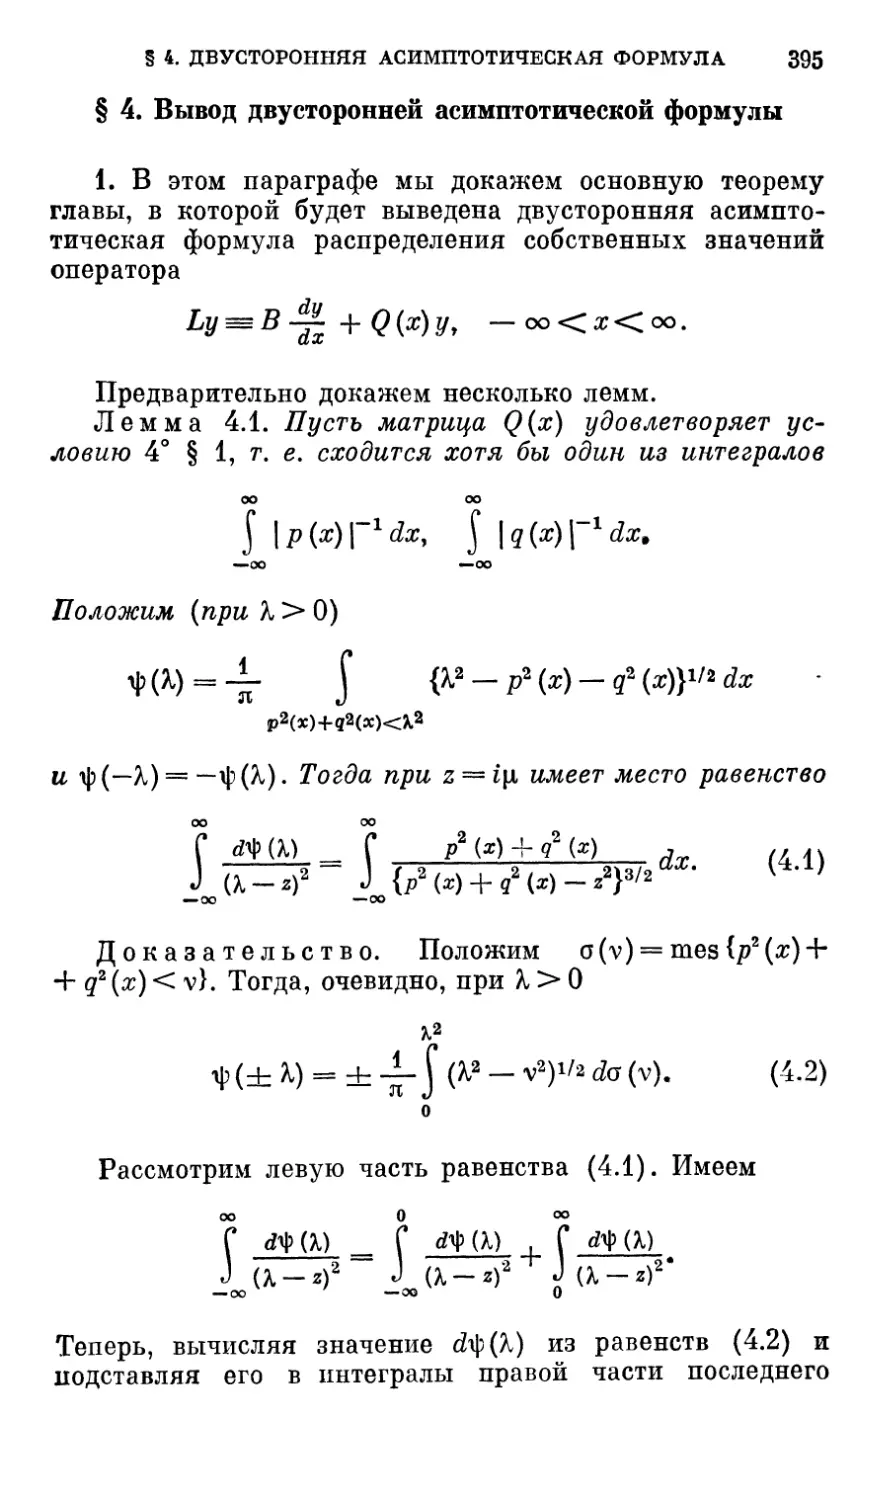 § 4. Вывод двусторонней асимптотической формулы